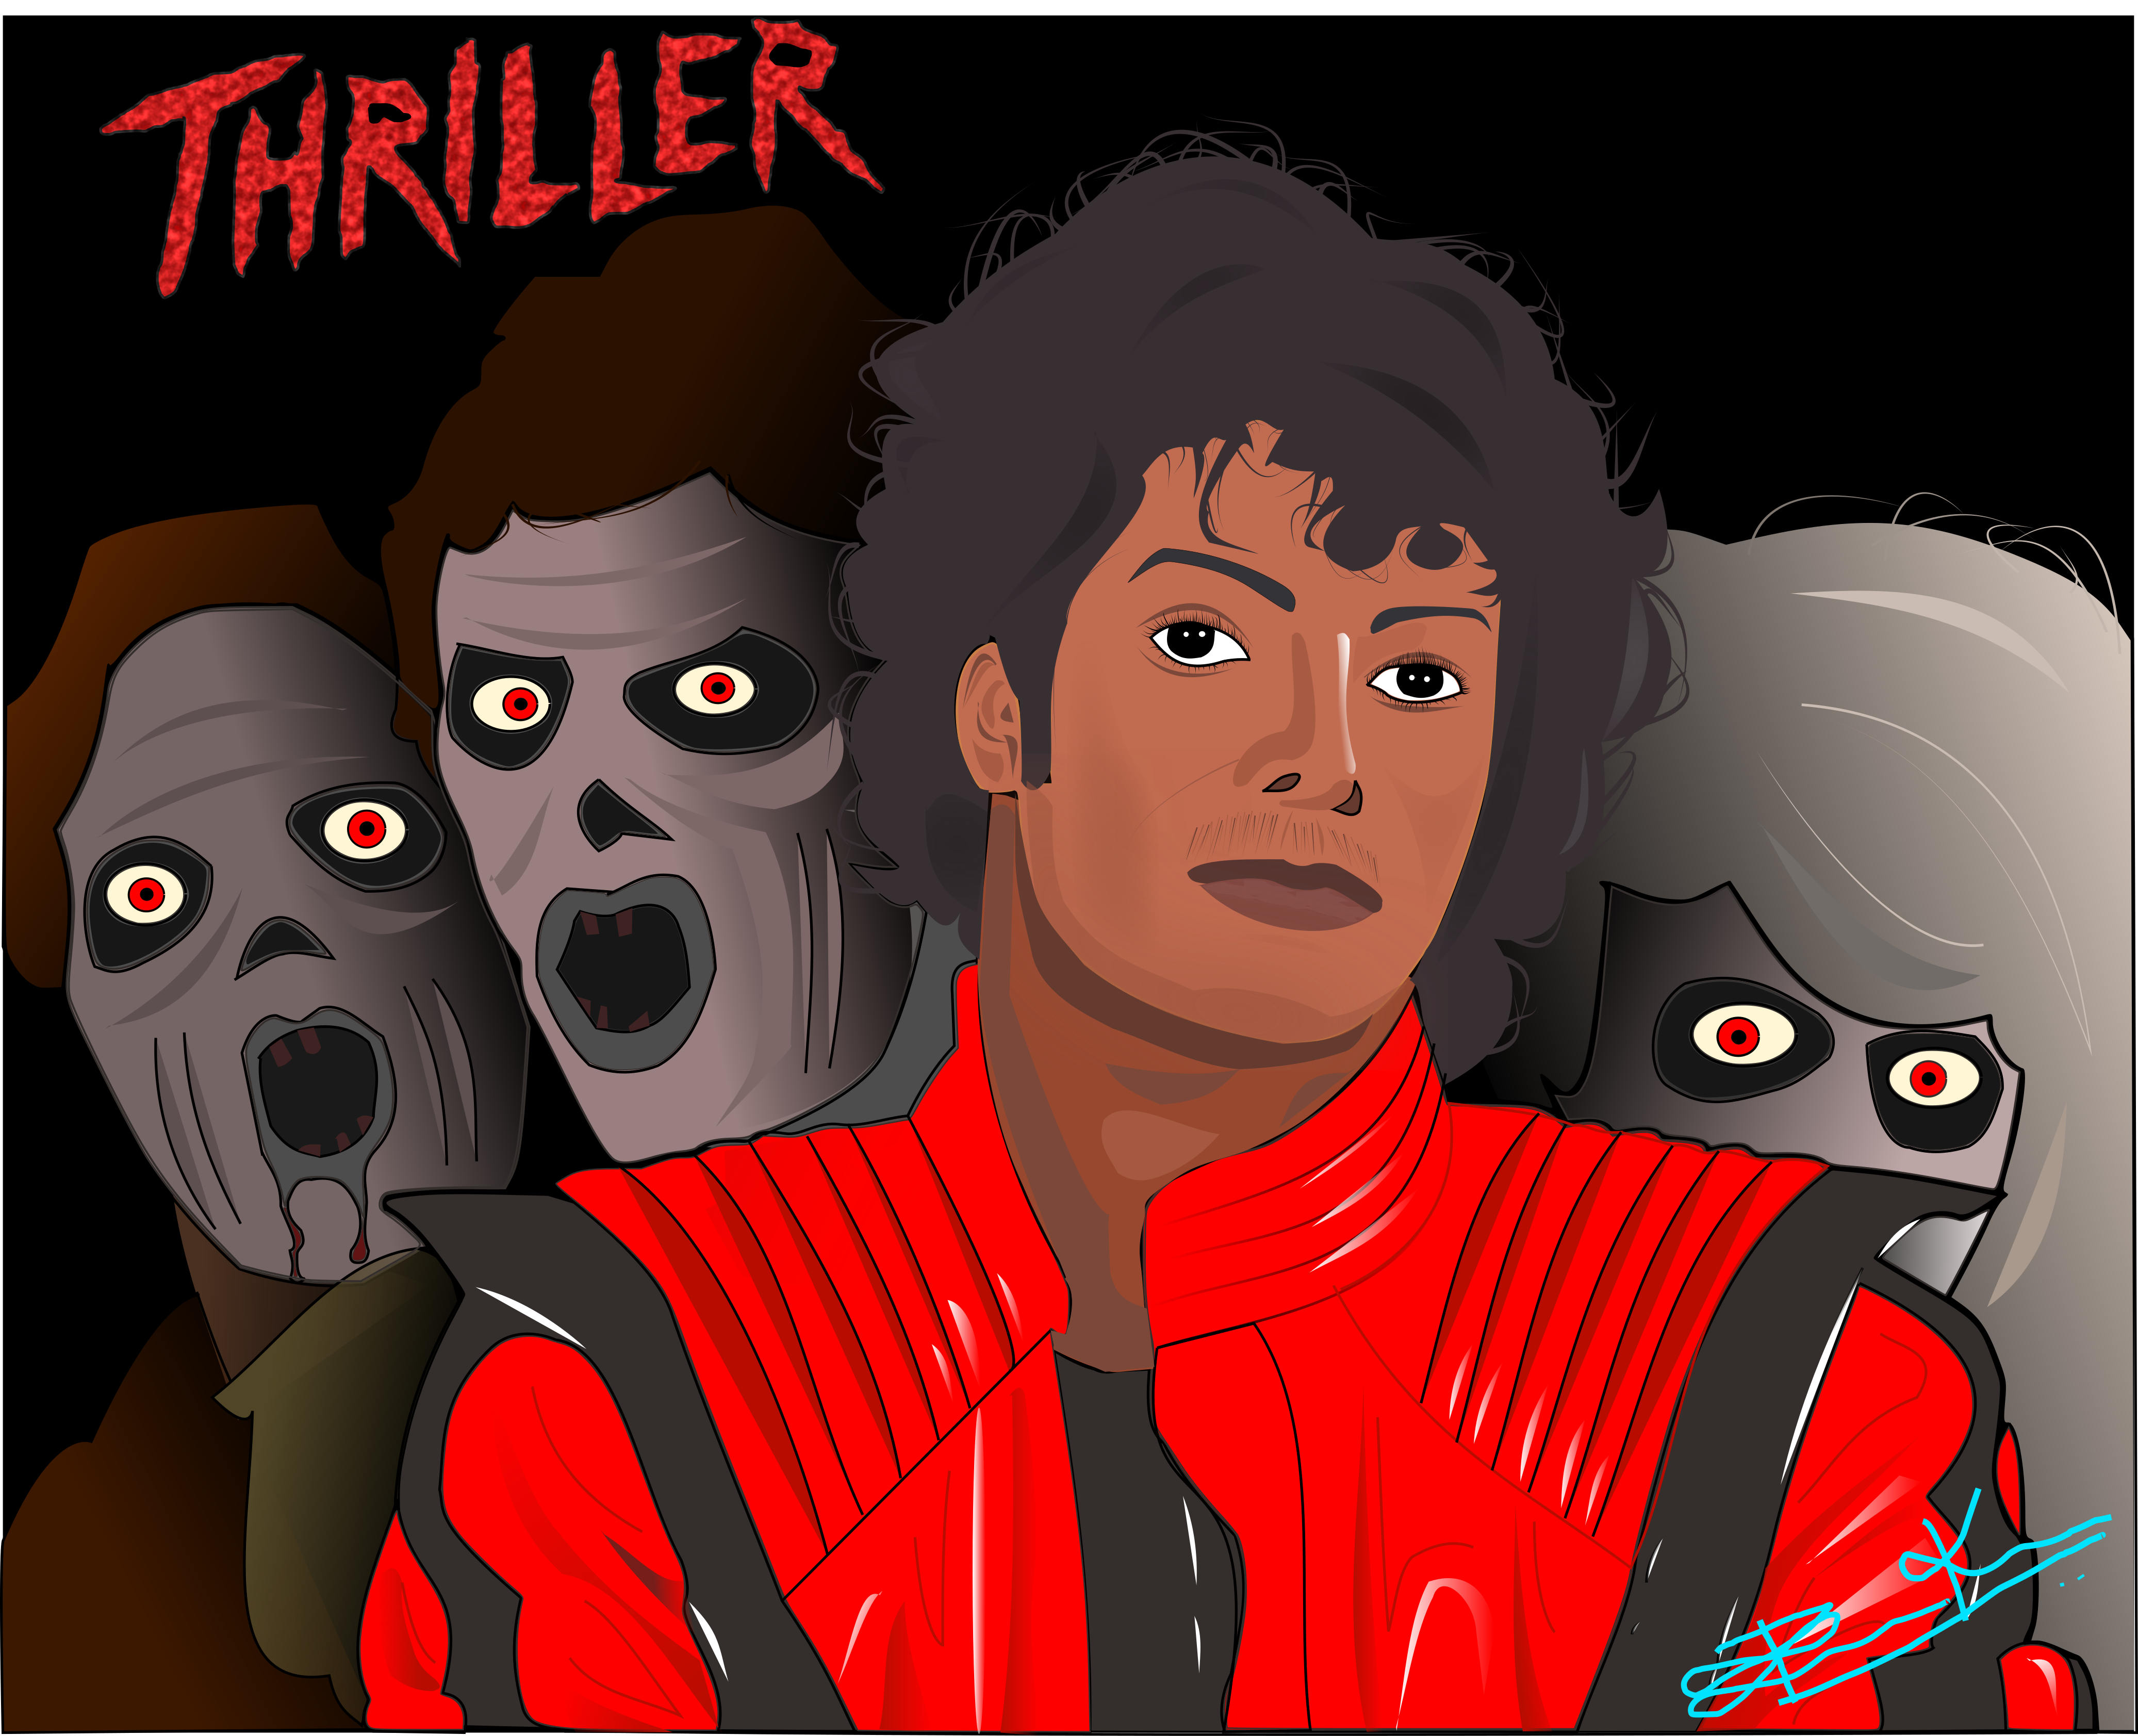 Thriller digital illustration